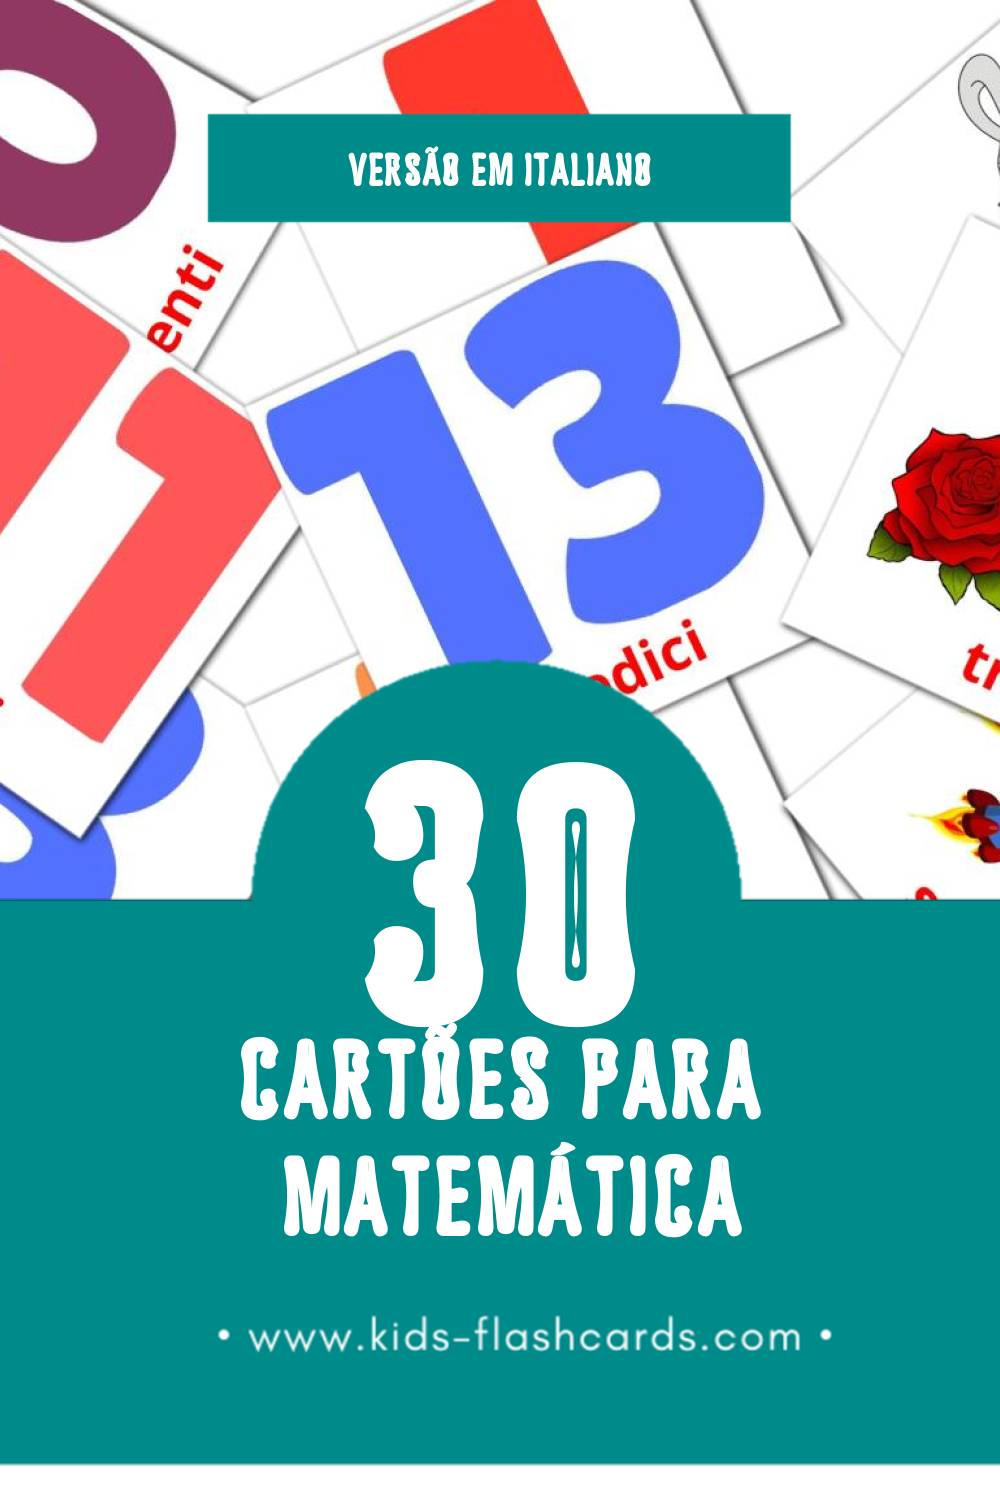 Flashcards de Matematica Visuais para Toddlers (30 cartões em Italiano)